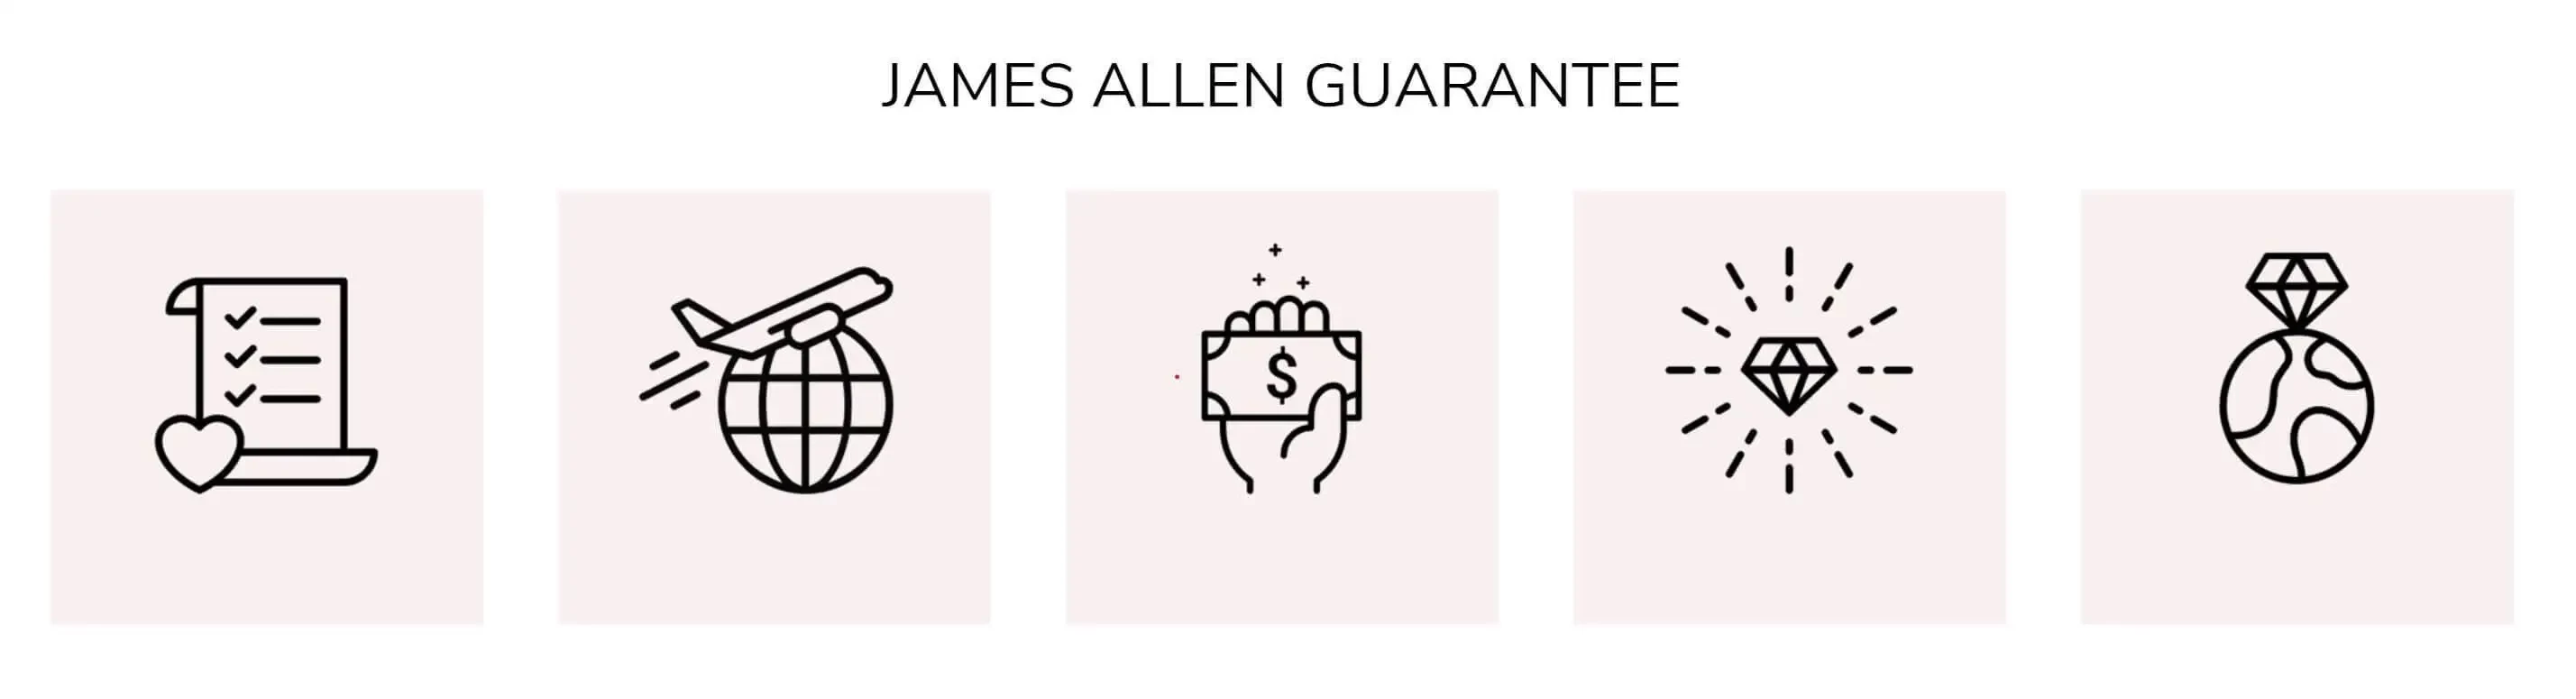 James Allen Guarantee Policy